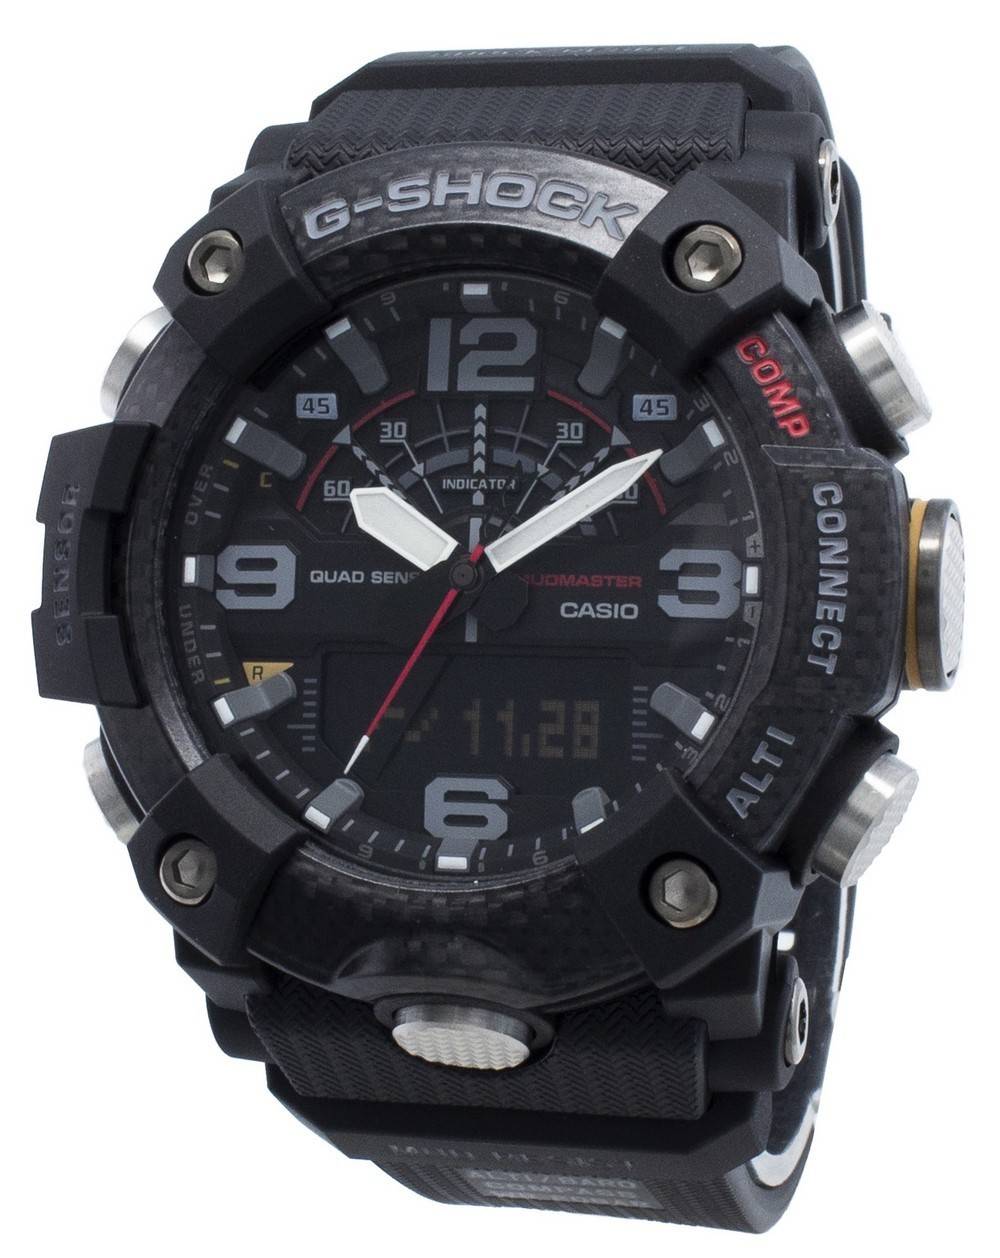 Casio G-Shock Mudmaster GG-B100-1A World Time 200M Men's Watch | eBay